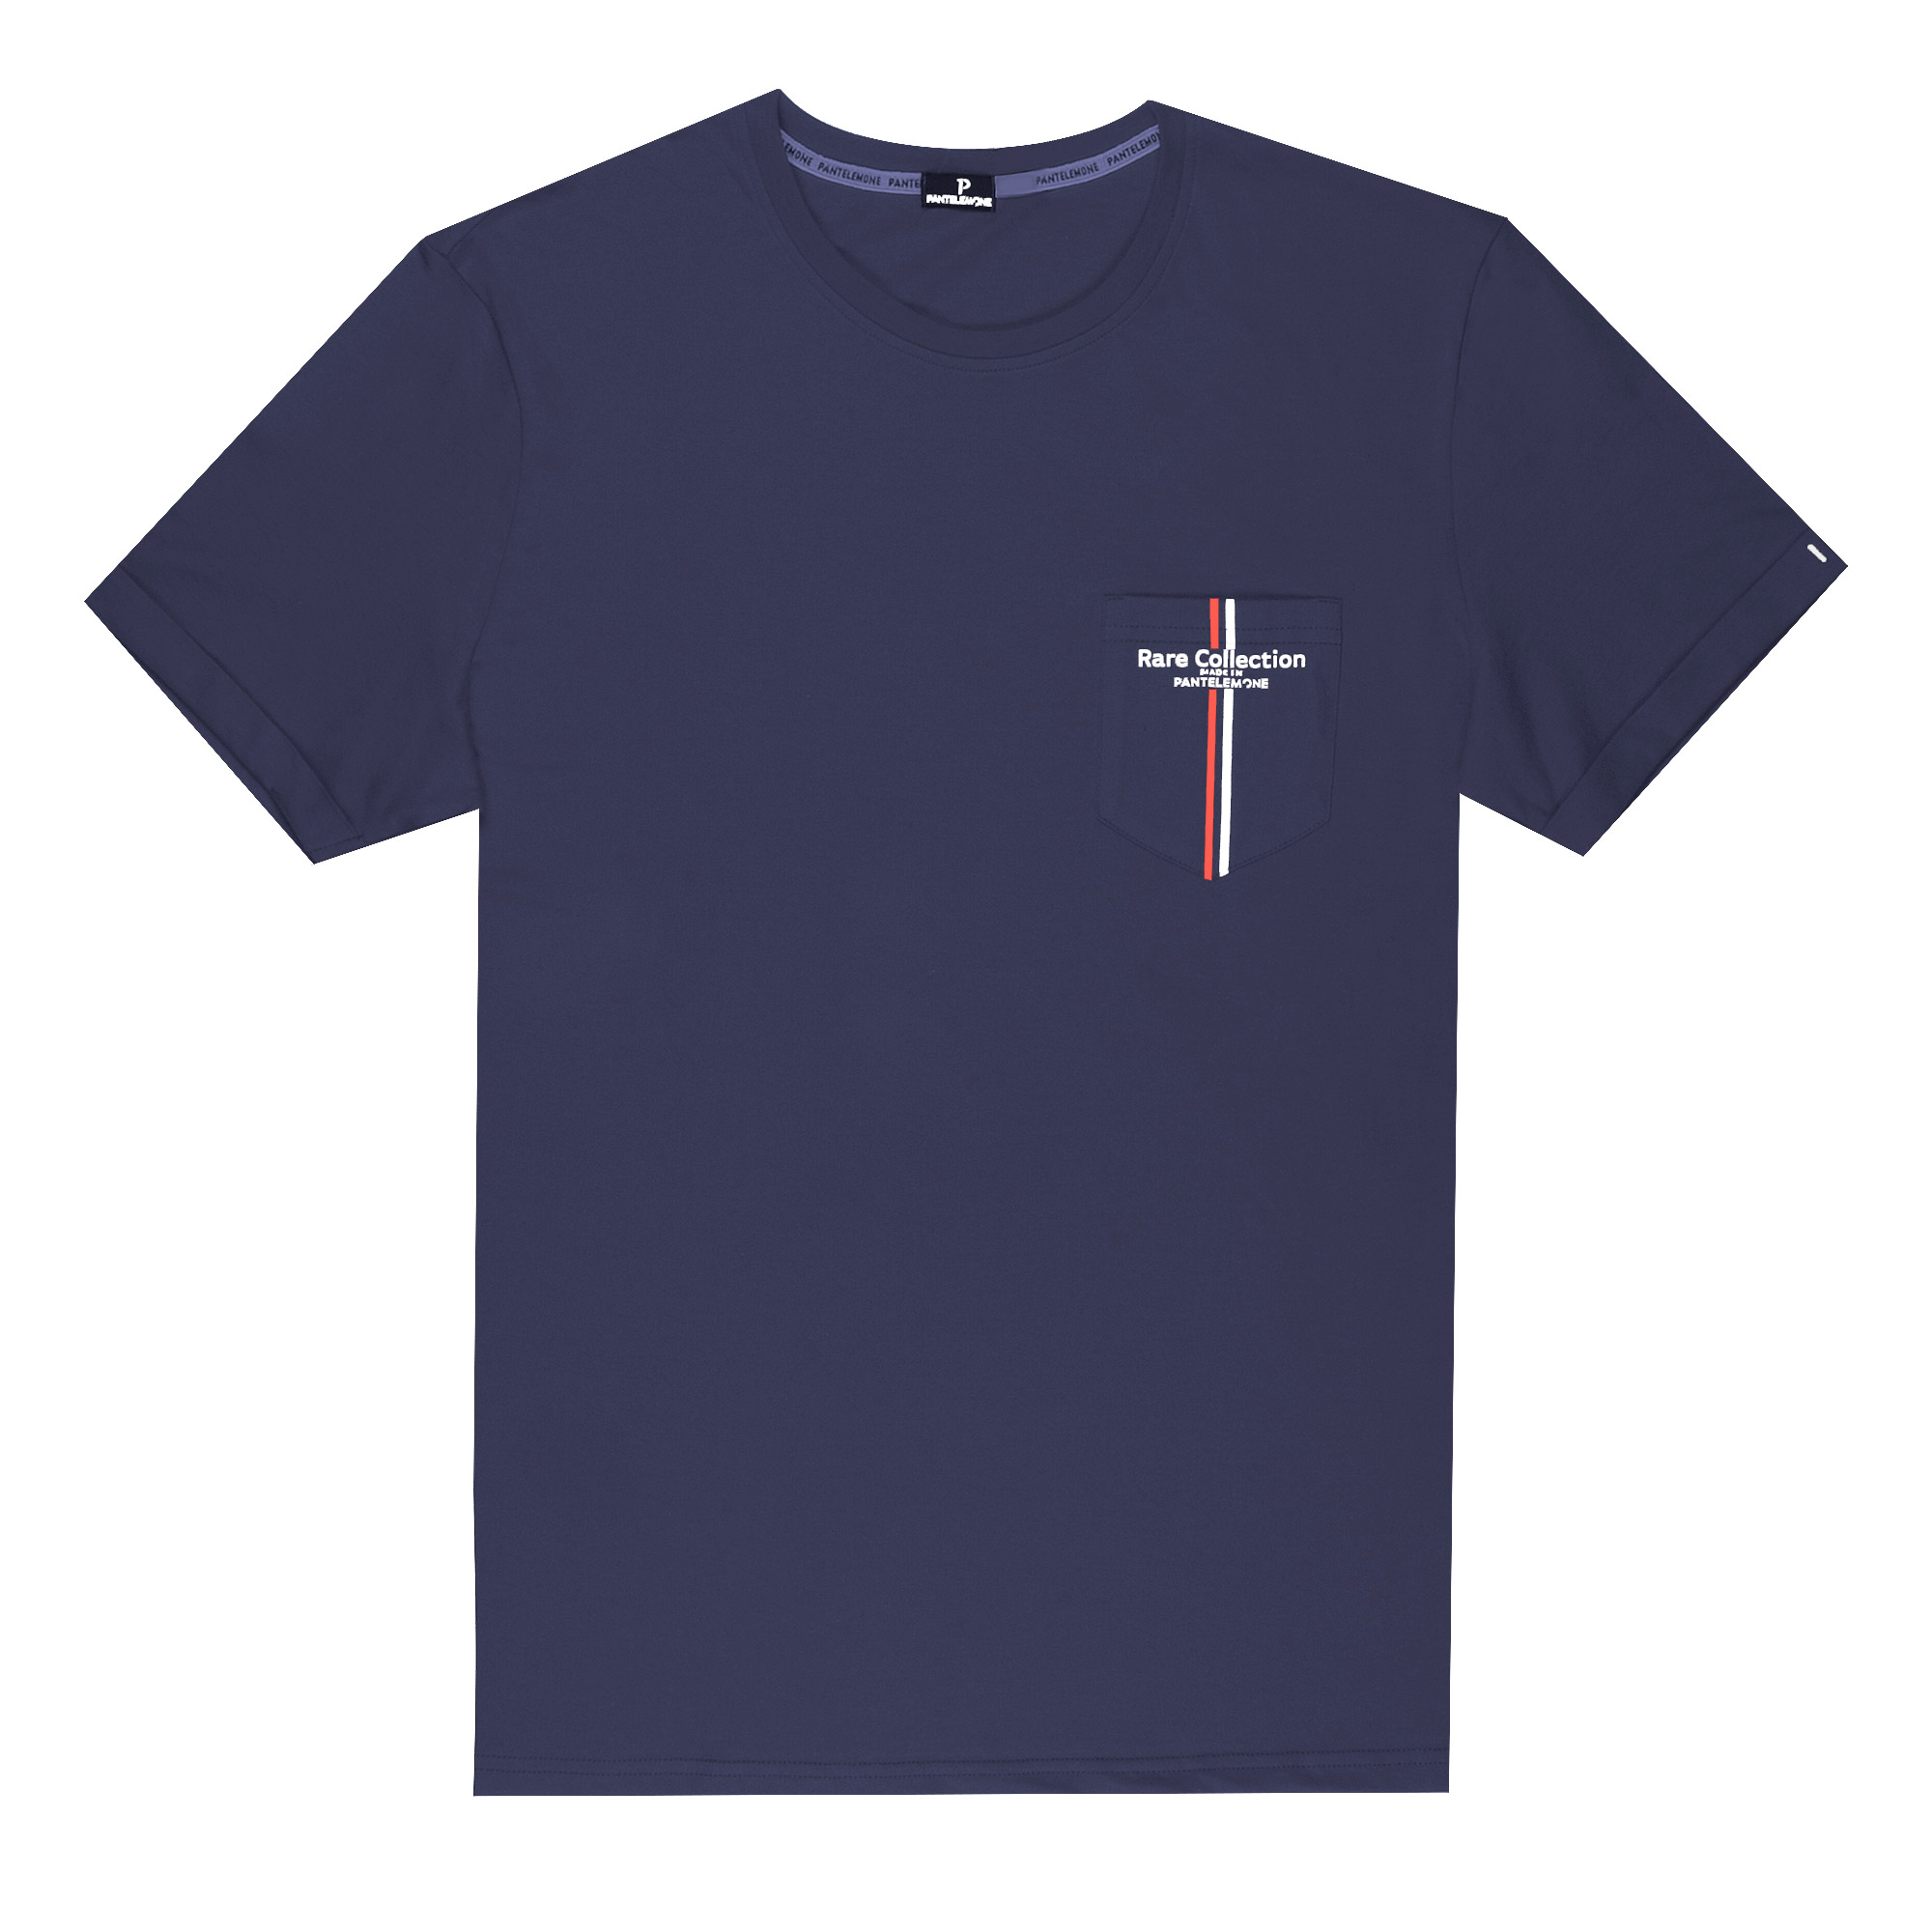 Мужская футболка Pantelemone MF-898 темно-синяя 54, цвет темно-синий, размер 54 - фото 1